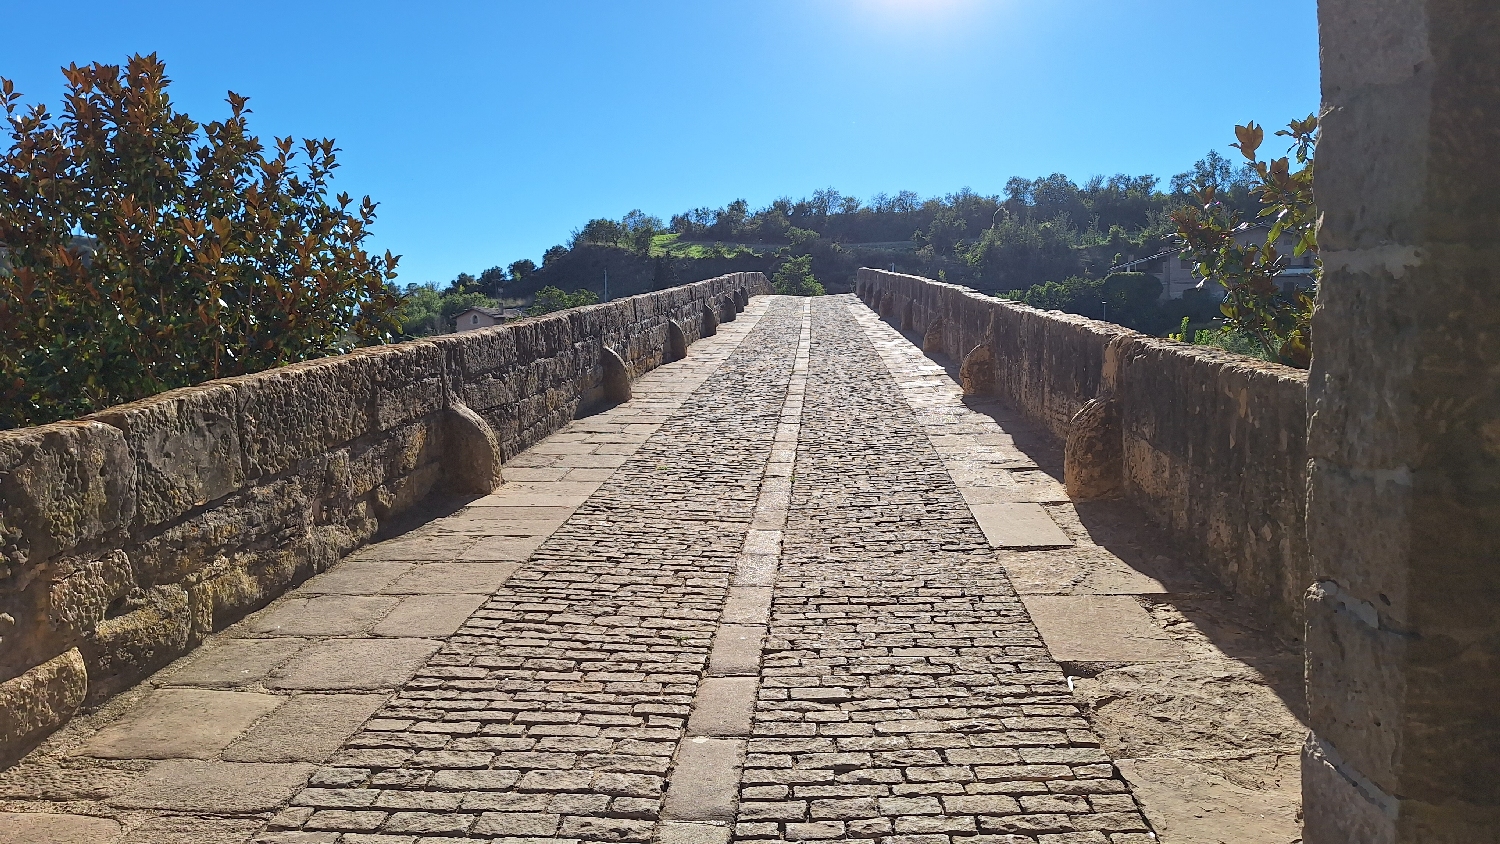 El Camino, Aragon út, Francia út, Puente la Reina, a régi gyalogos kőhíd